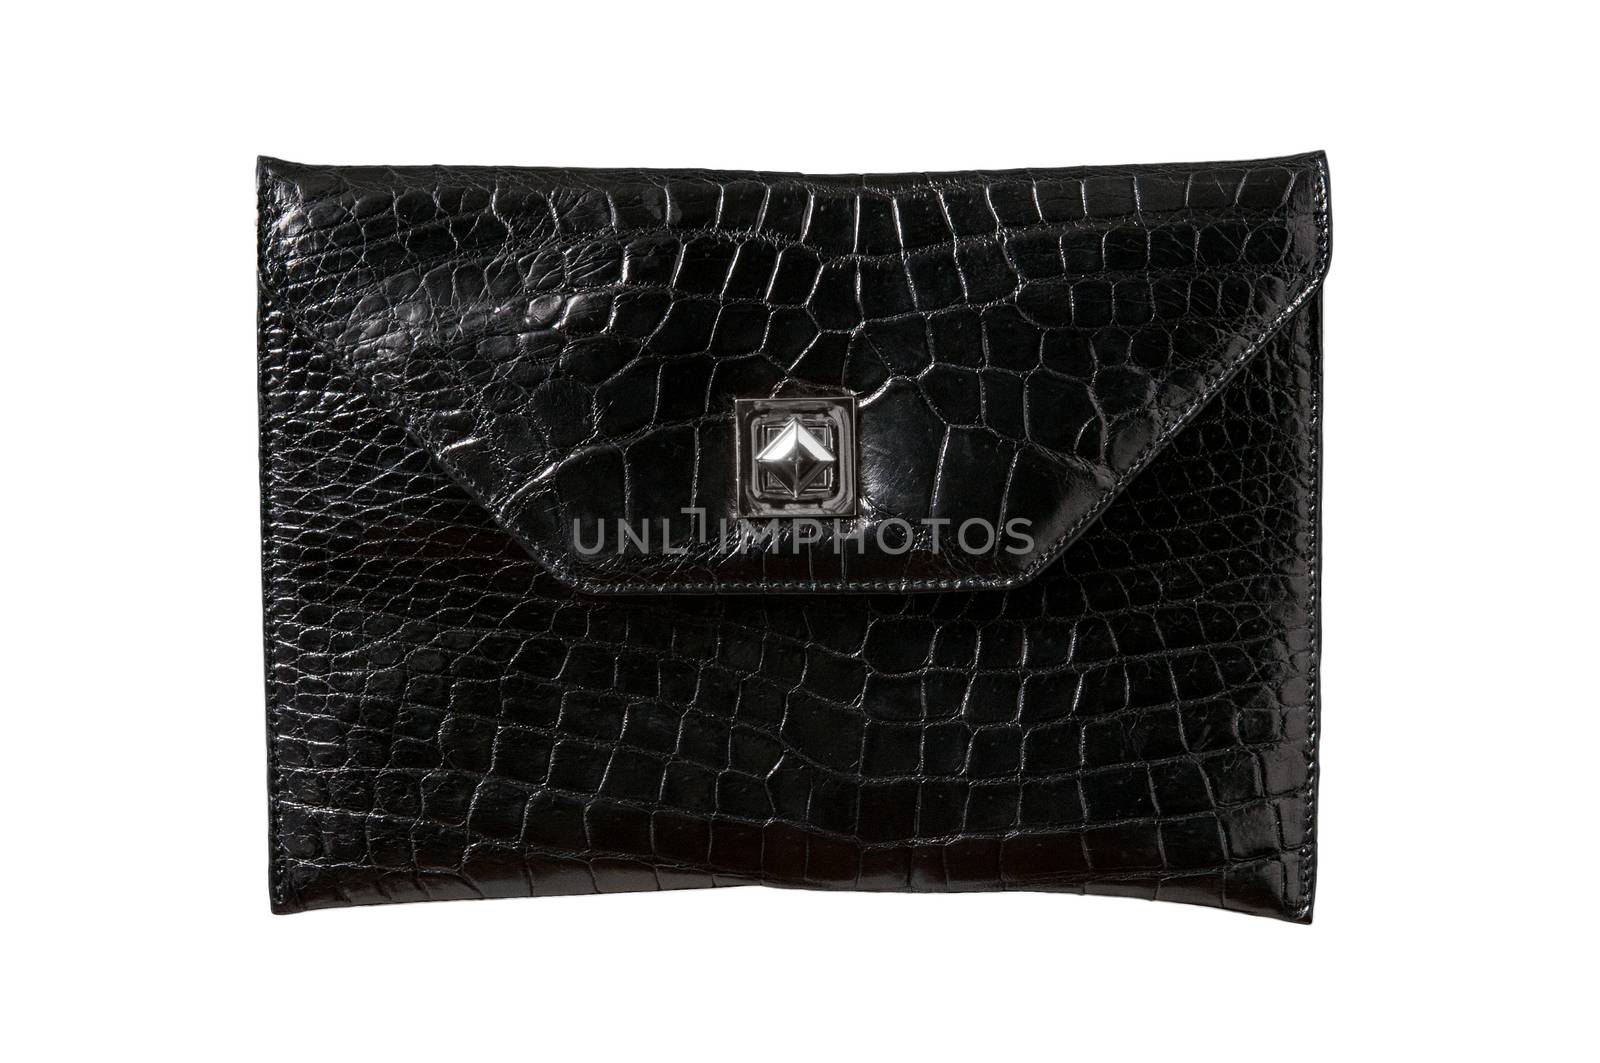 Leather, back alligator  bag by praethip